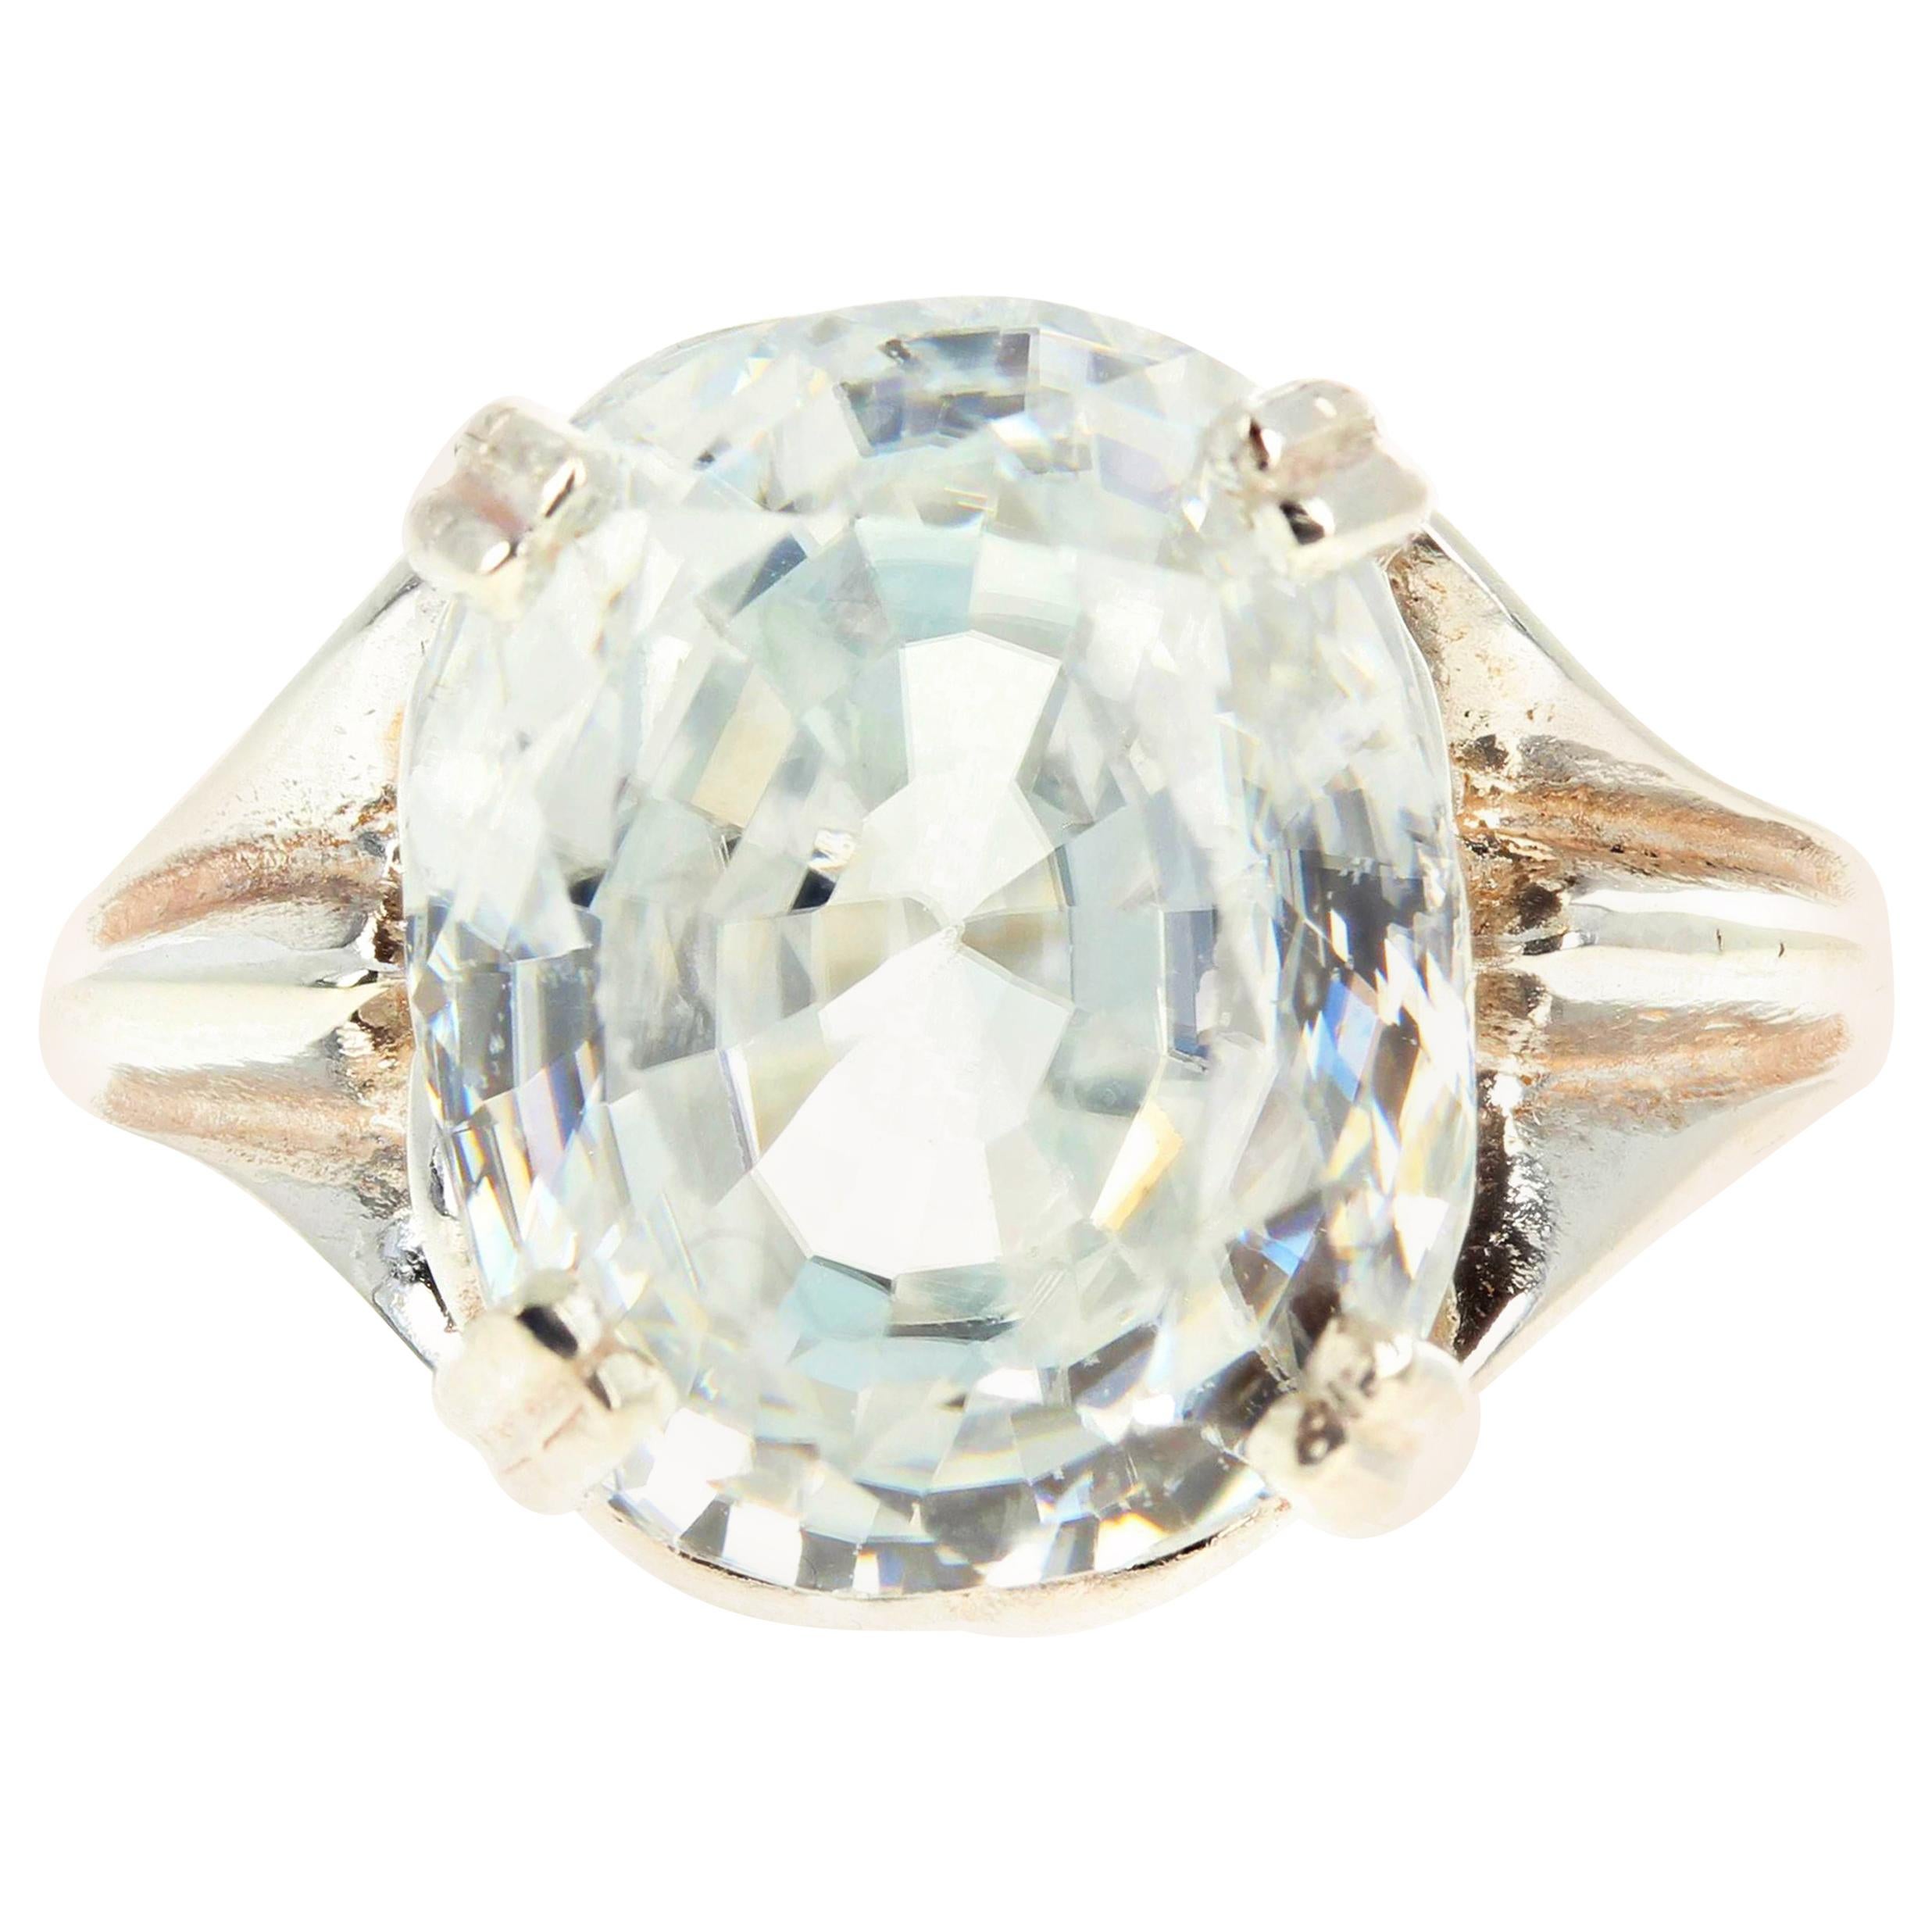 Dieser wunderschöne 14,6 mm x 12 mm große, glitzernde, weiße, natürliche Zirkon aus Kambodscha sieht an Ihrer Hand aus wie ein großer Diamant!  Diese 15,69 Karat sitzen glänzend auf diesem Ring aus Sterlingsilber in Größe 7 (sizable).  Es gibt keine